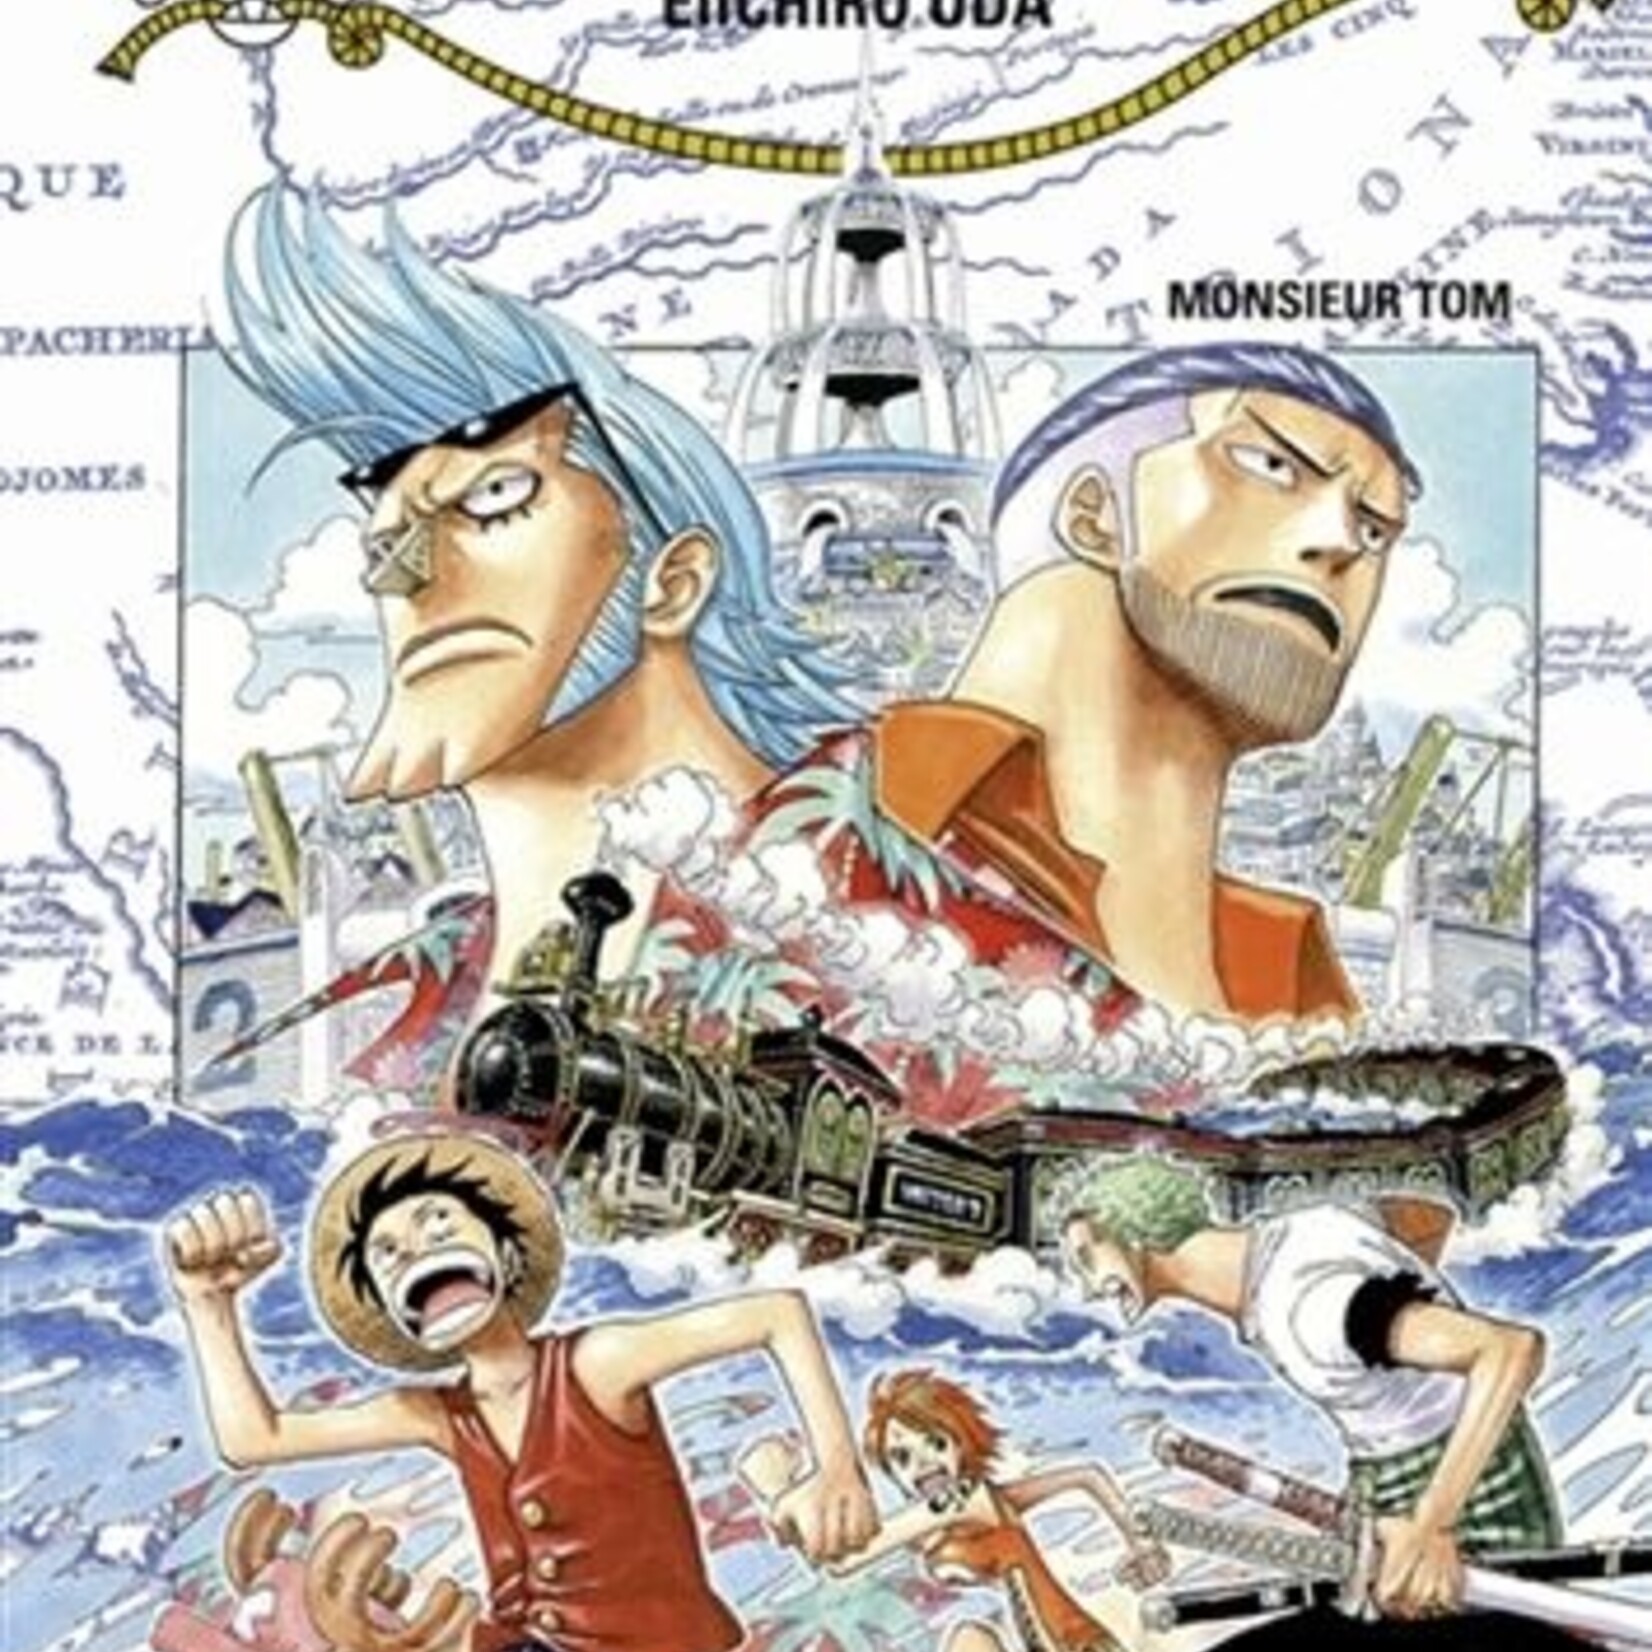 Glénat Manga - One Piece Tome 037